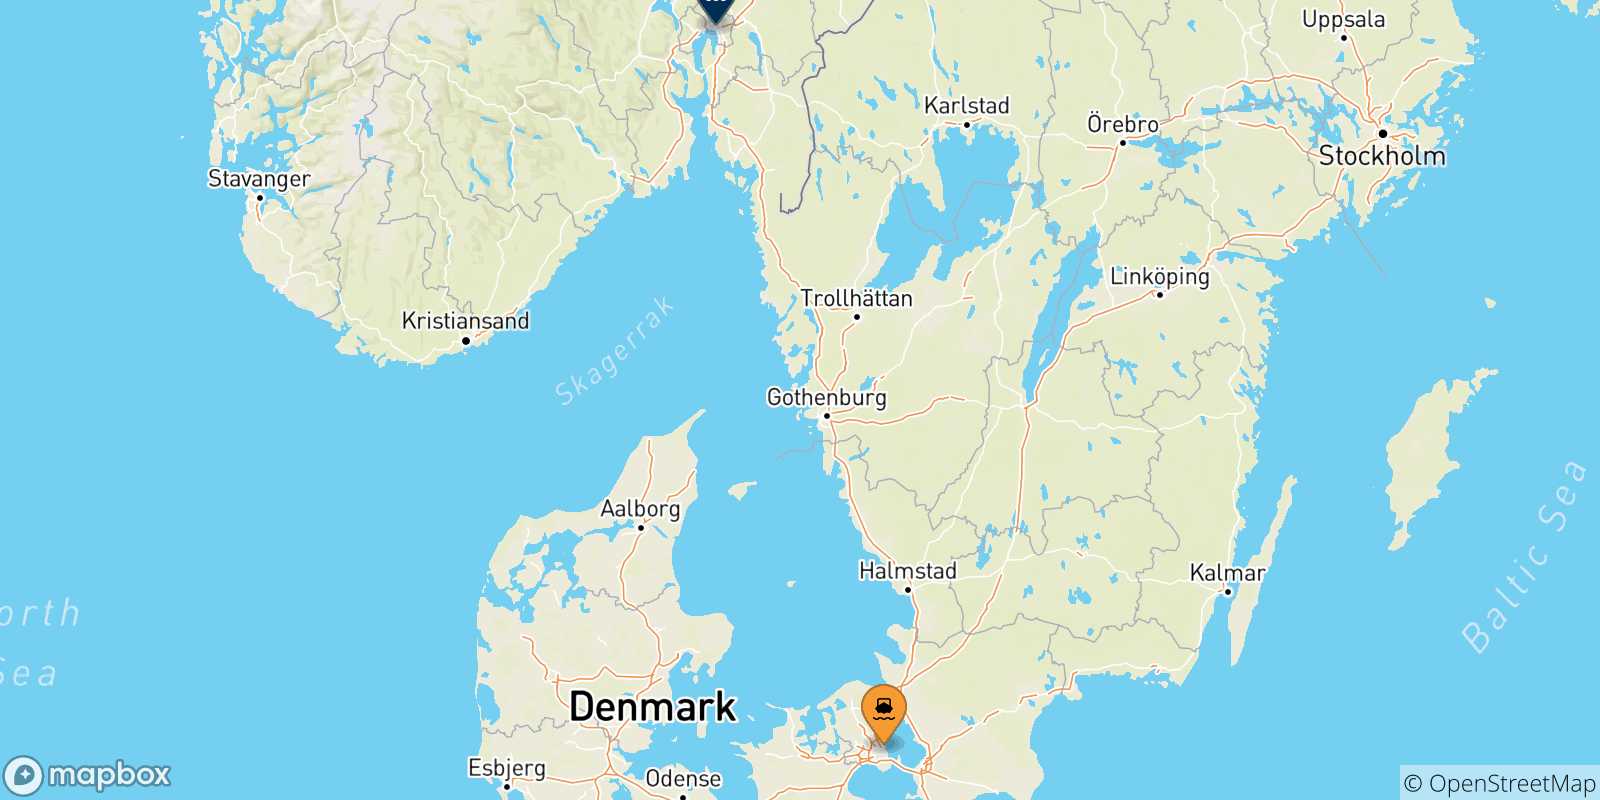 Mappa delle possibili rotte tra la Danimarca e Oslo